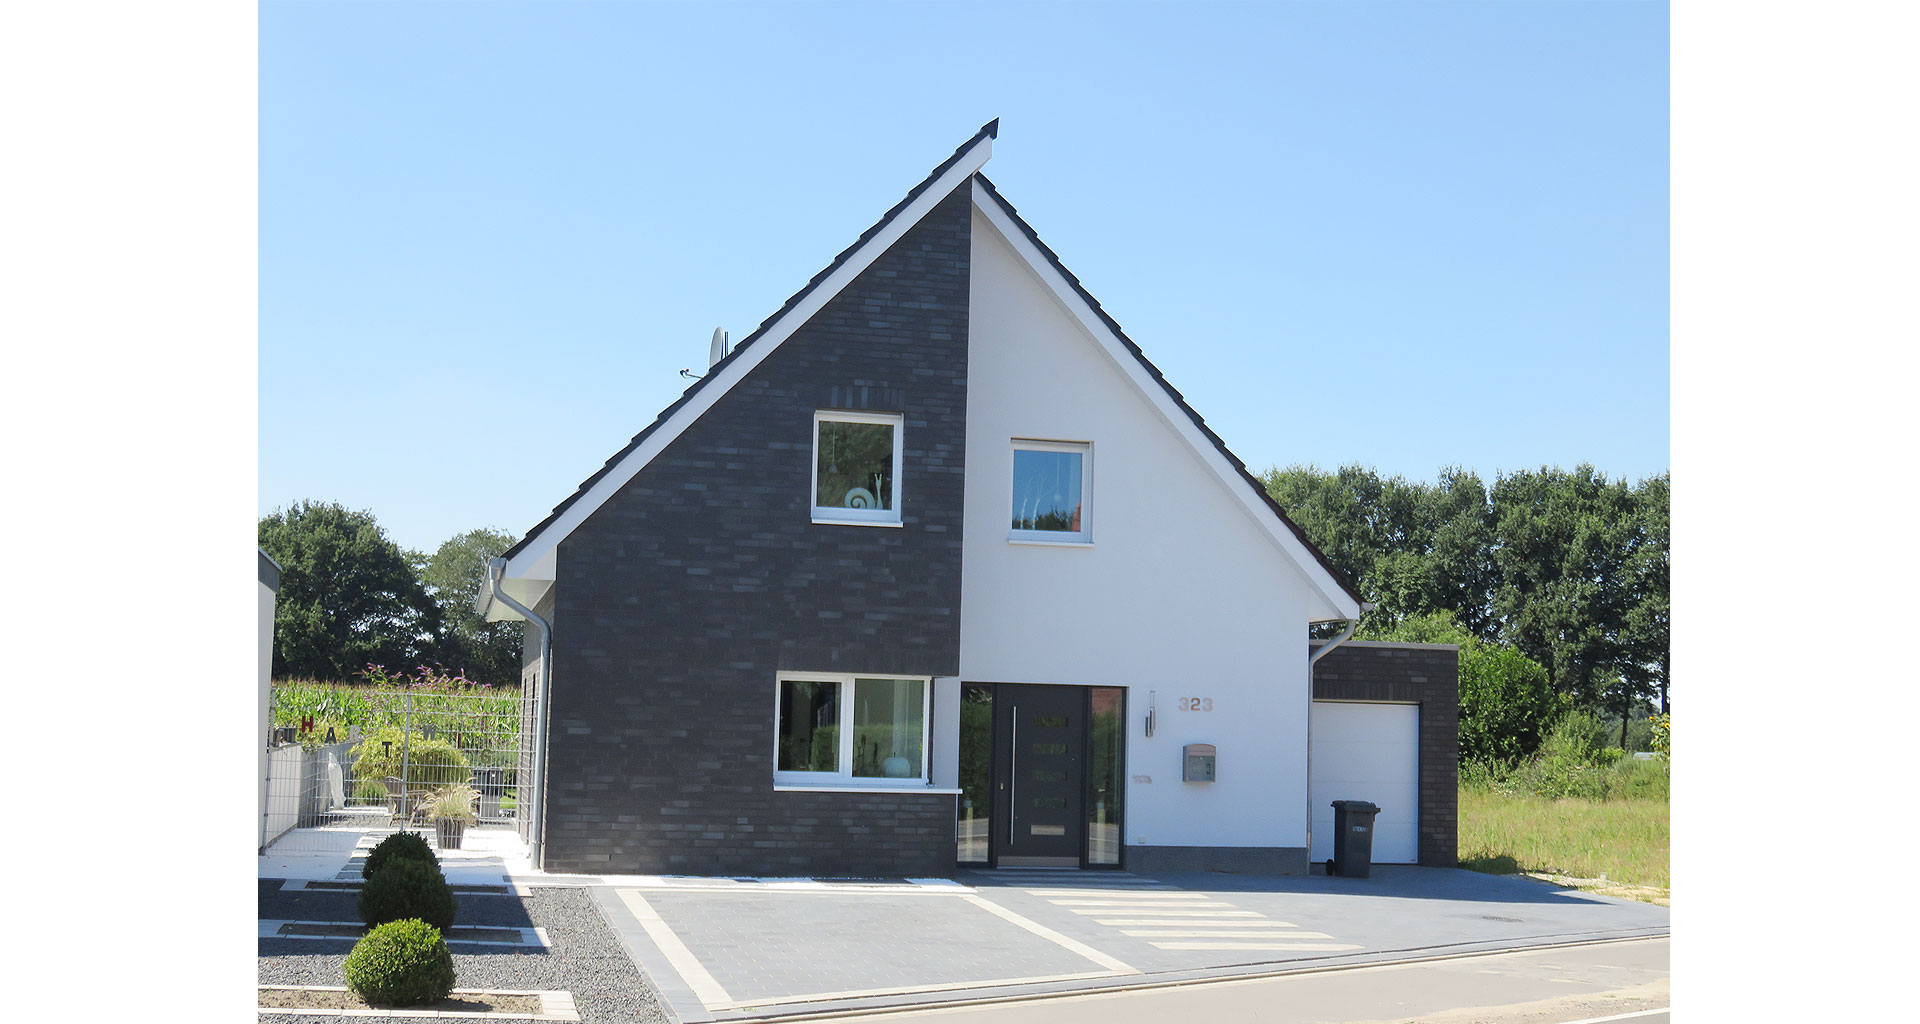 Einfamilienhaus Front mit Parkplatz in Grafschaft Bentheim Nordhorn 2016